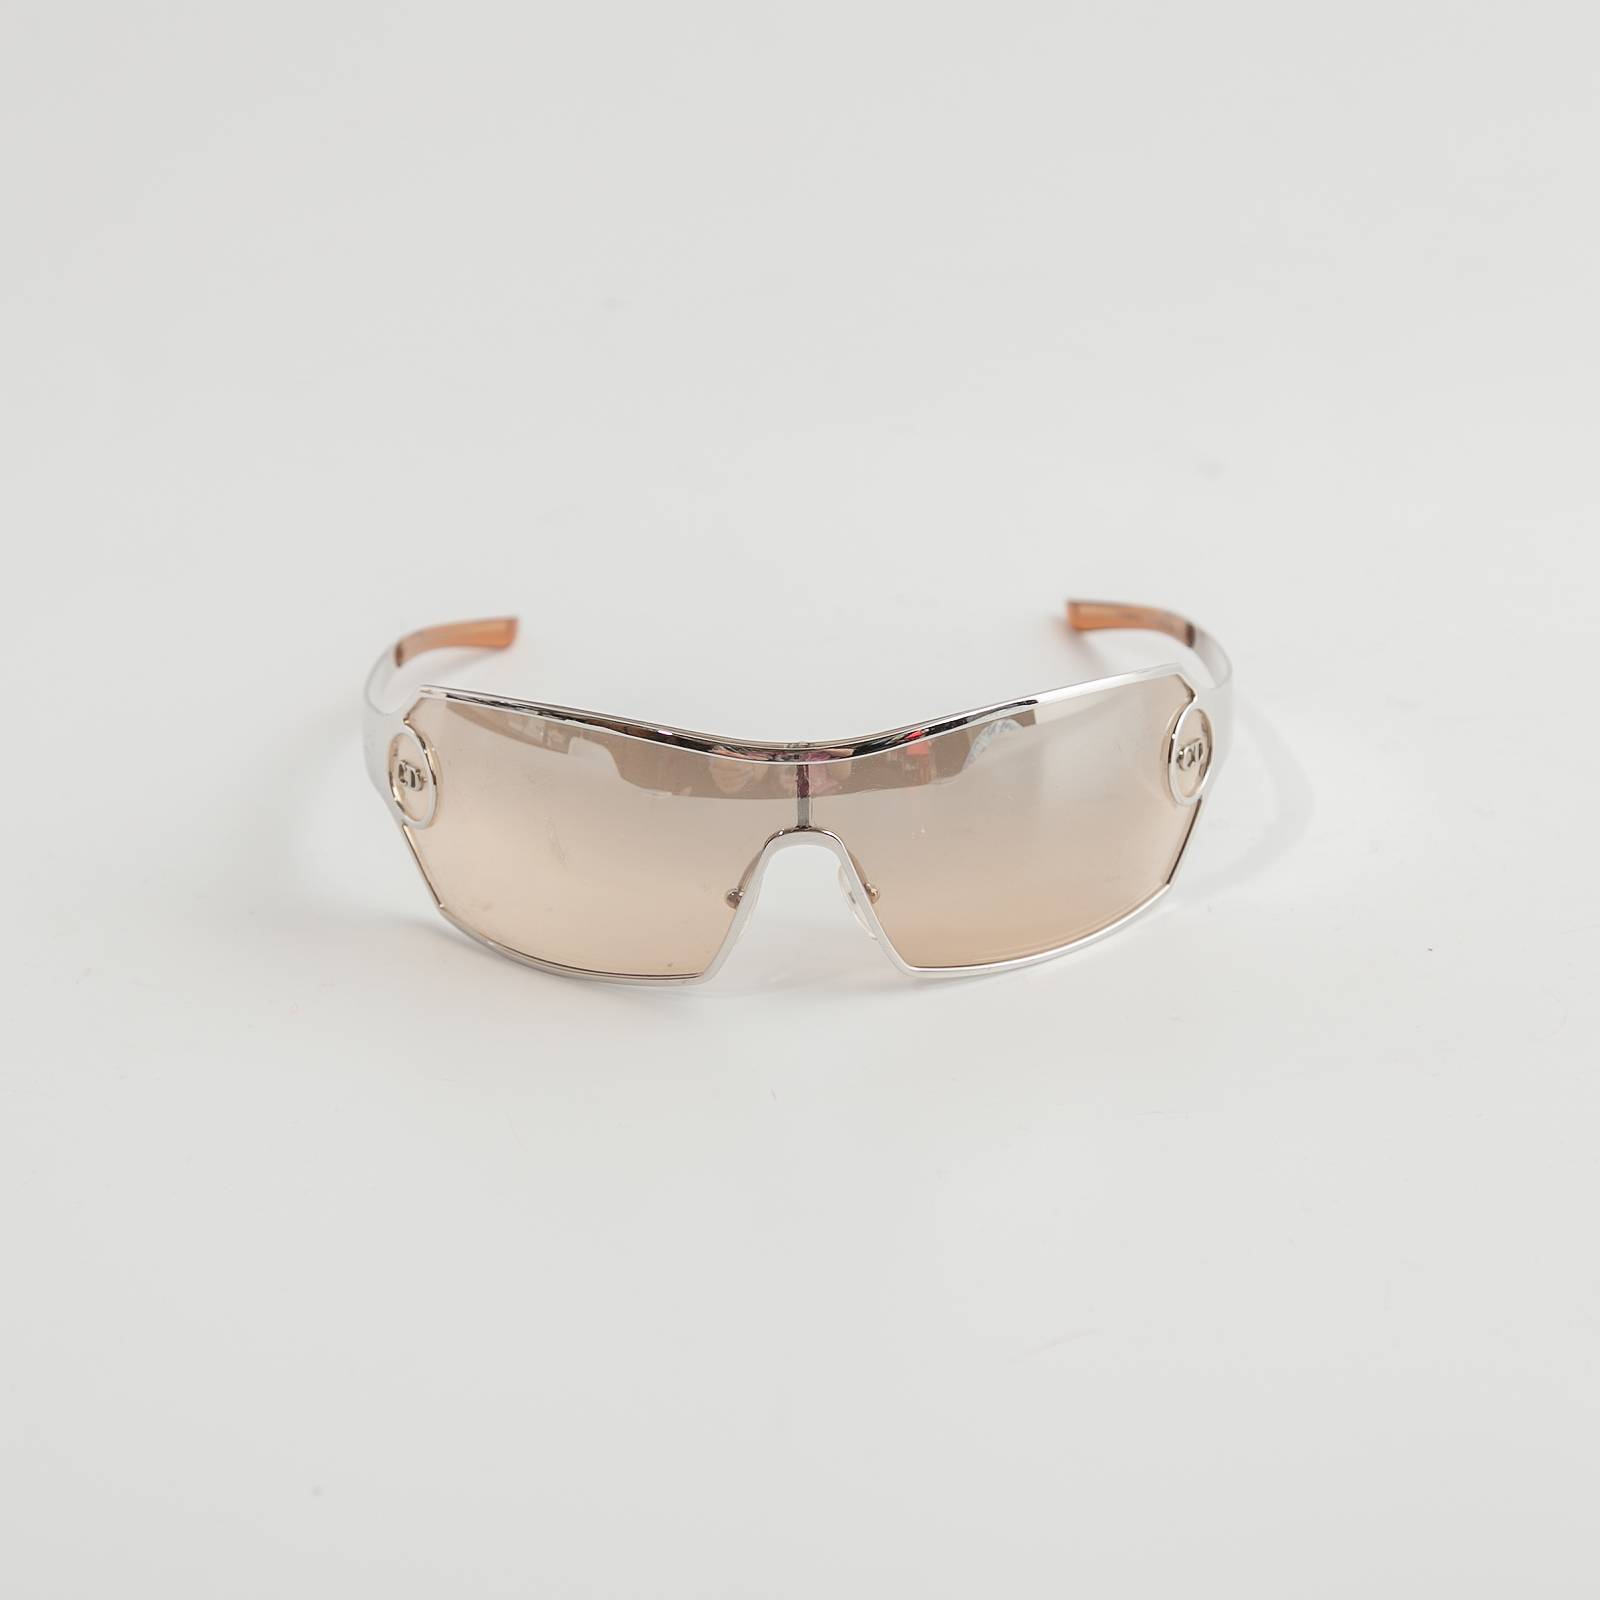 Купить Солнцезащитные очки Зеркальные солнцезащитные очки DiorClub M1U  DiorOblique Dior цвет  cиний по цене 94 810 рублей в интернетмагазине  Usmallru